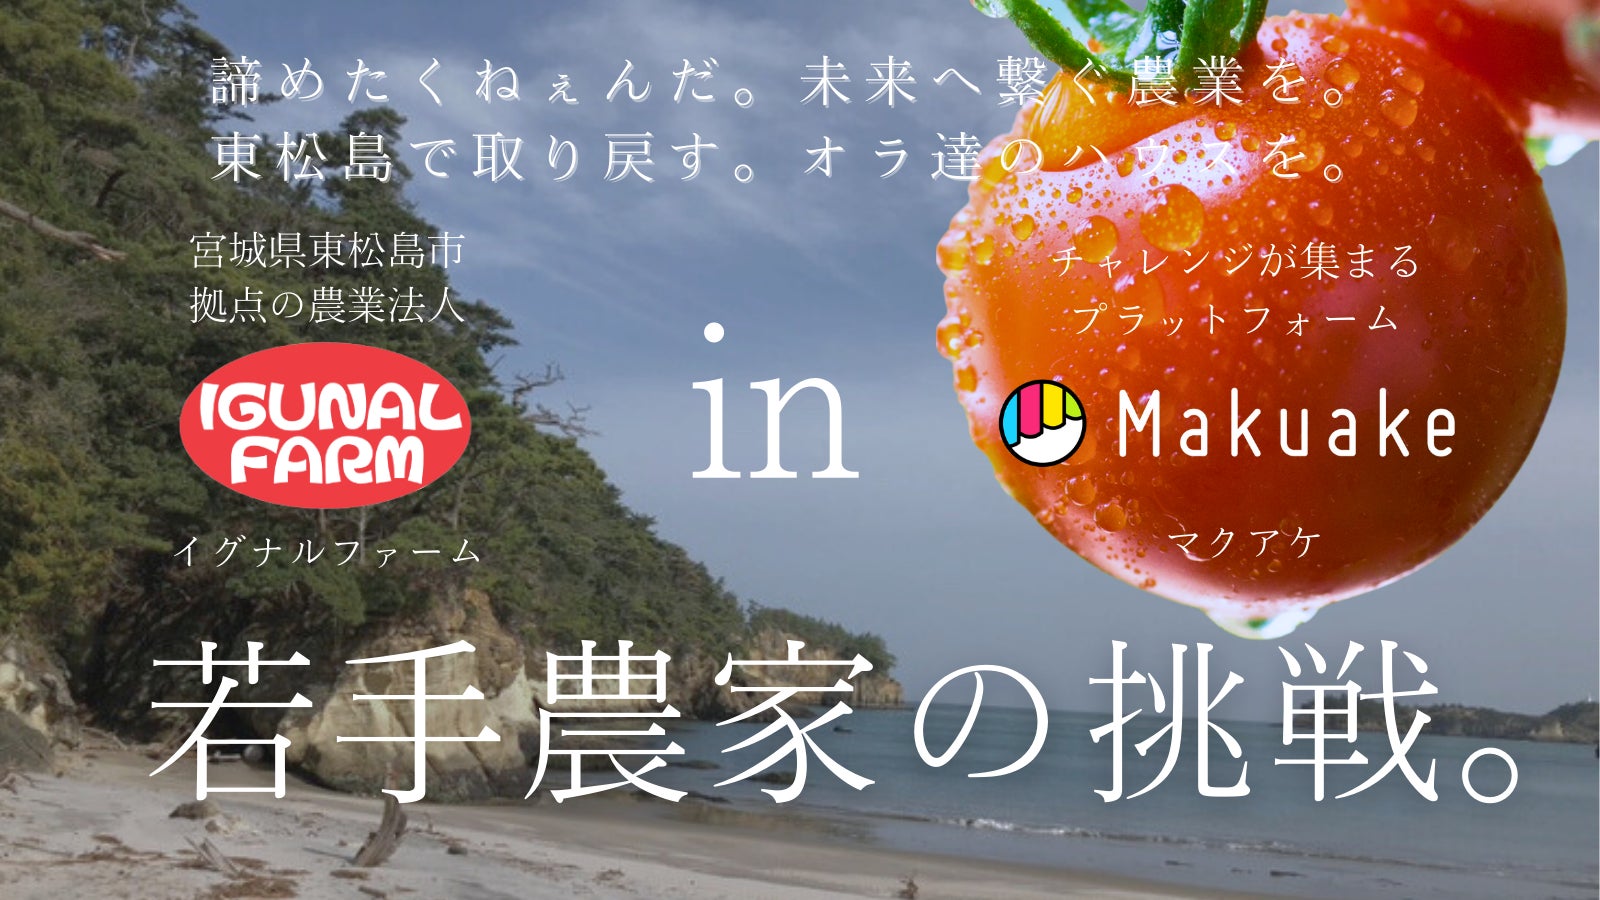 東松島の「いぐなる」ものを食べてミニトマトハウス再建を応援！【日本三景の一つ松島の海水を使用】ミニトマトを生産する農業法人「イグナルファーム」がMakuakeにて開始4日で100万円の応援購入集まるのサブ画像1